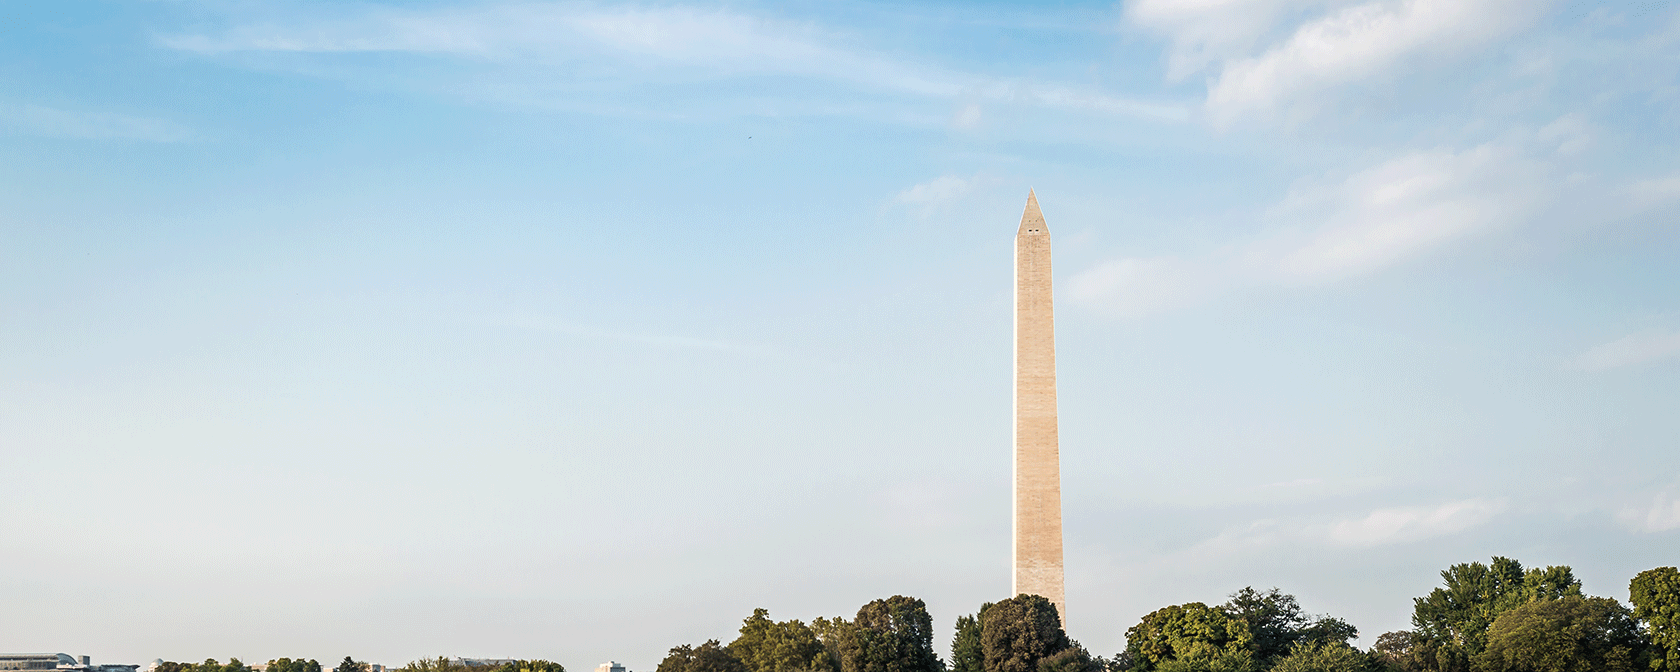 Monumento a Washington visto desde la Cuenca Tidal